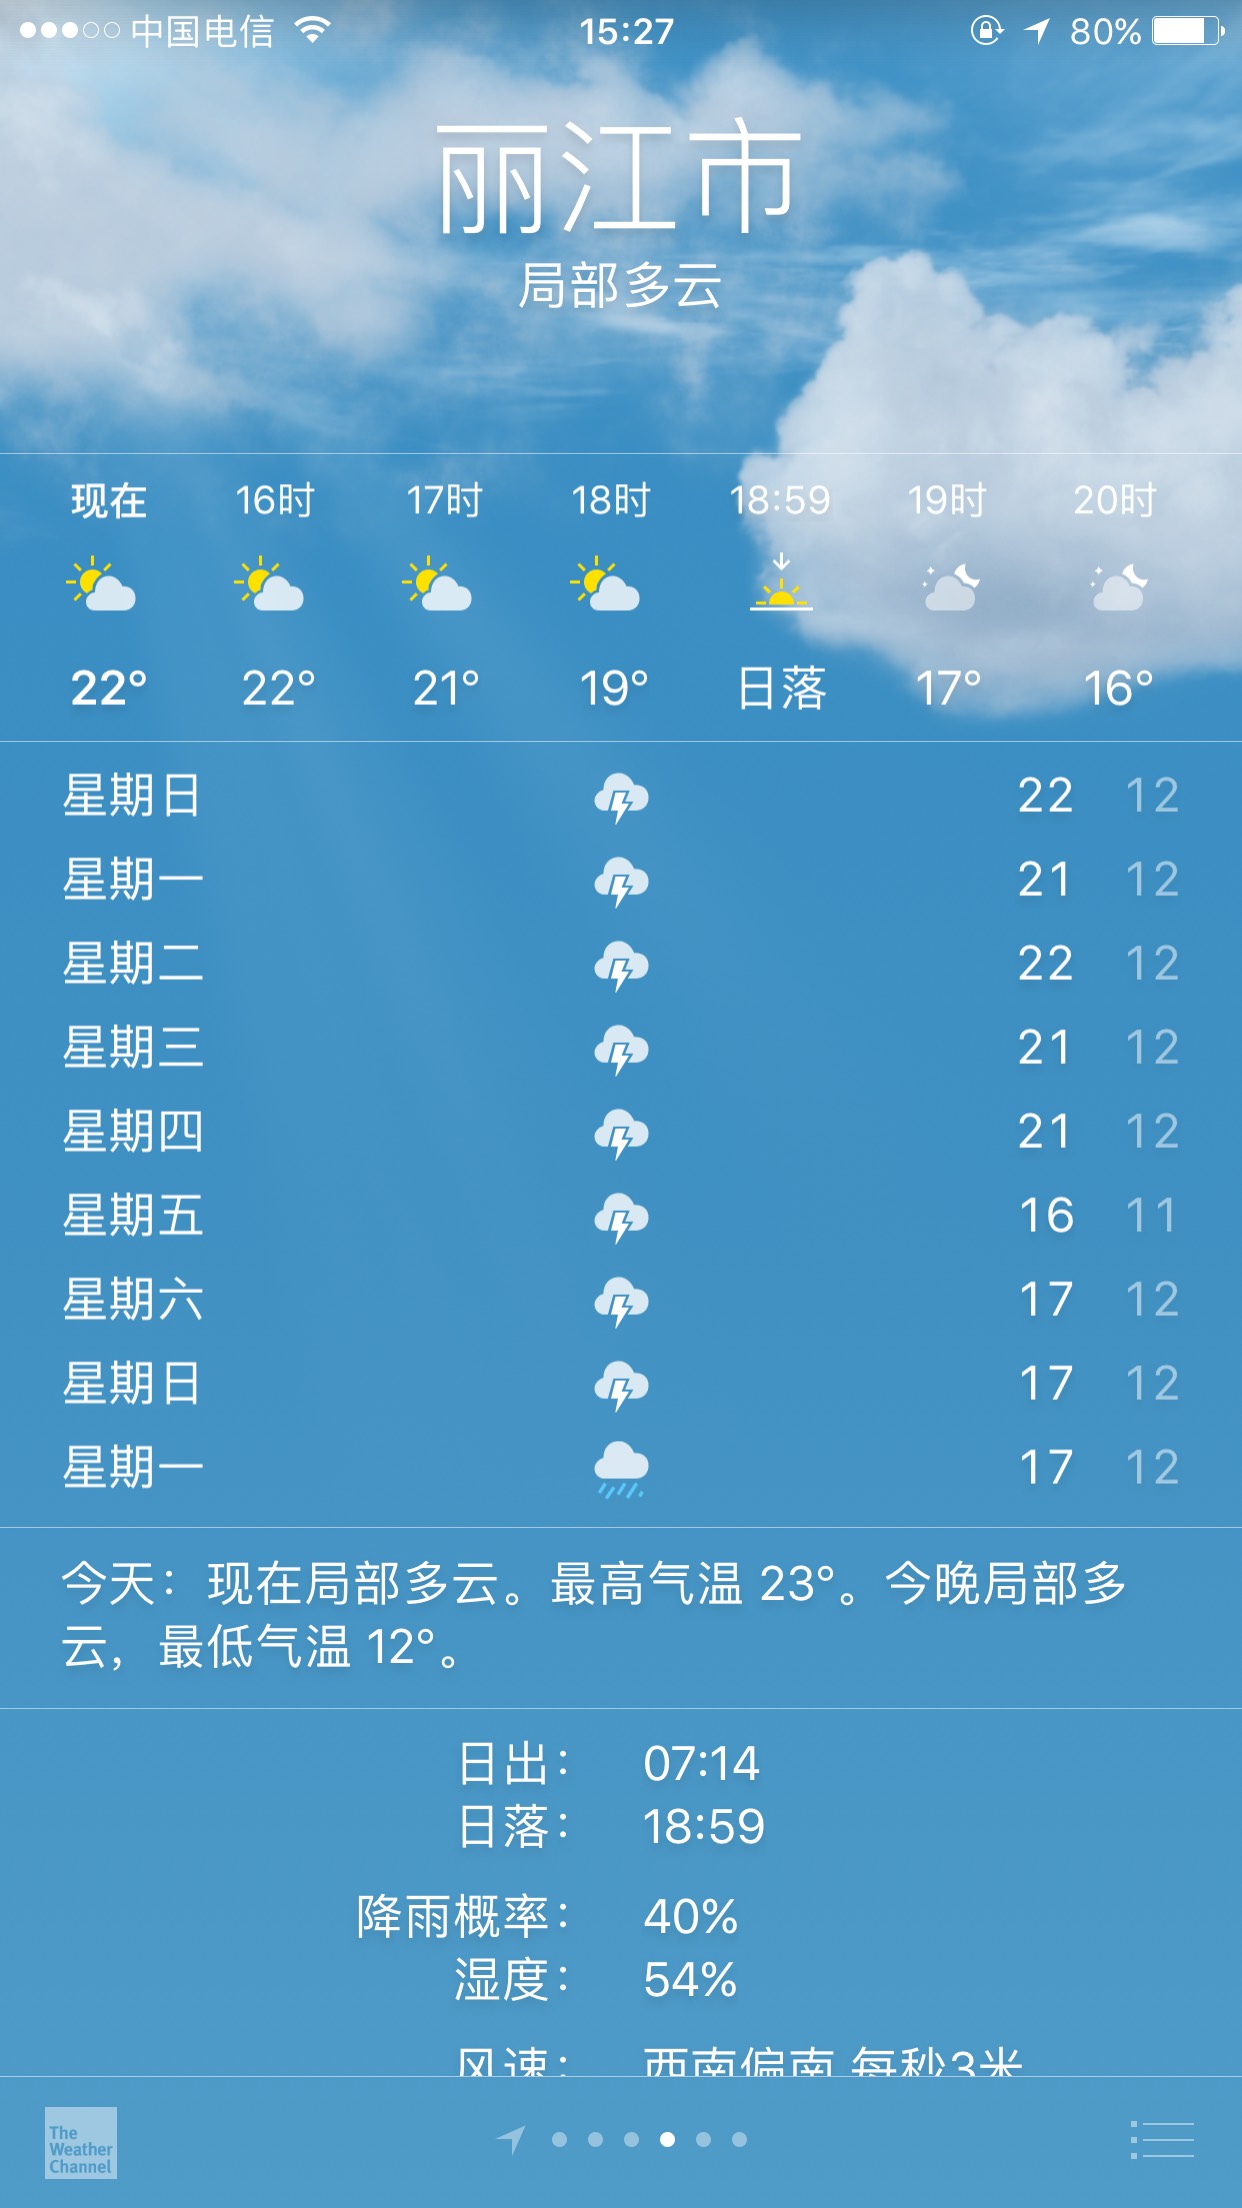 我这个月9号想去丽江可是看天气预报却天天下雨怎么办